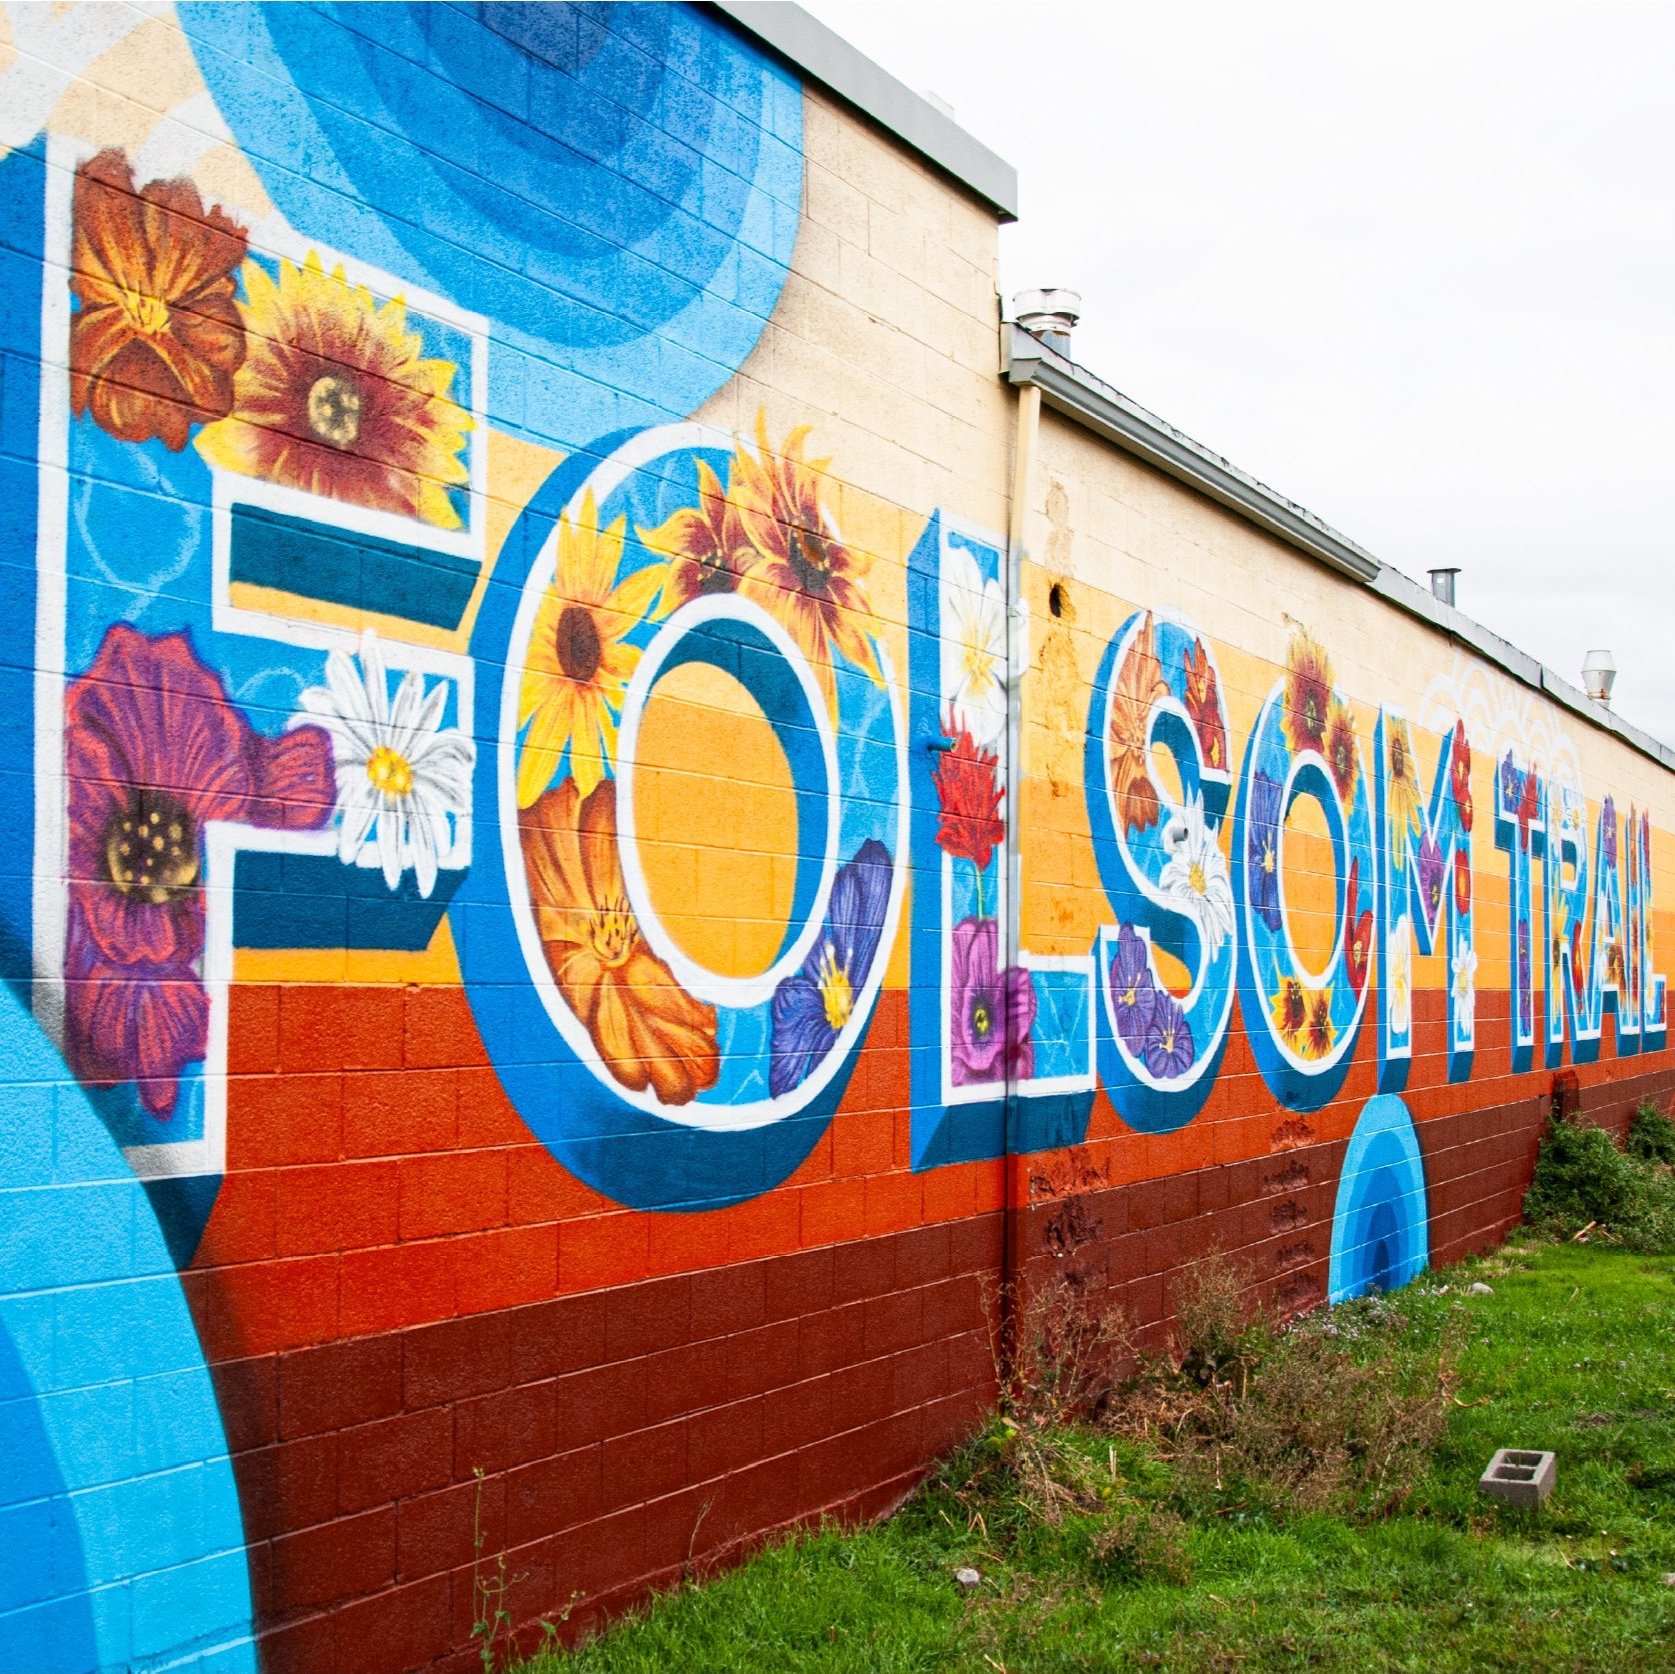 Folsom+Trail+Branding+Looking+East+in+2023+Folsom+Trail+Mural+Project+by+Roots+Art+Kollective+in+Salt+Lake+City.jpg